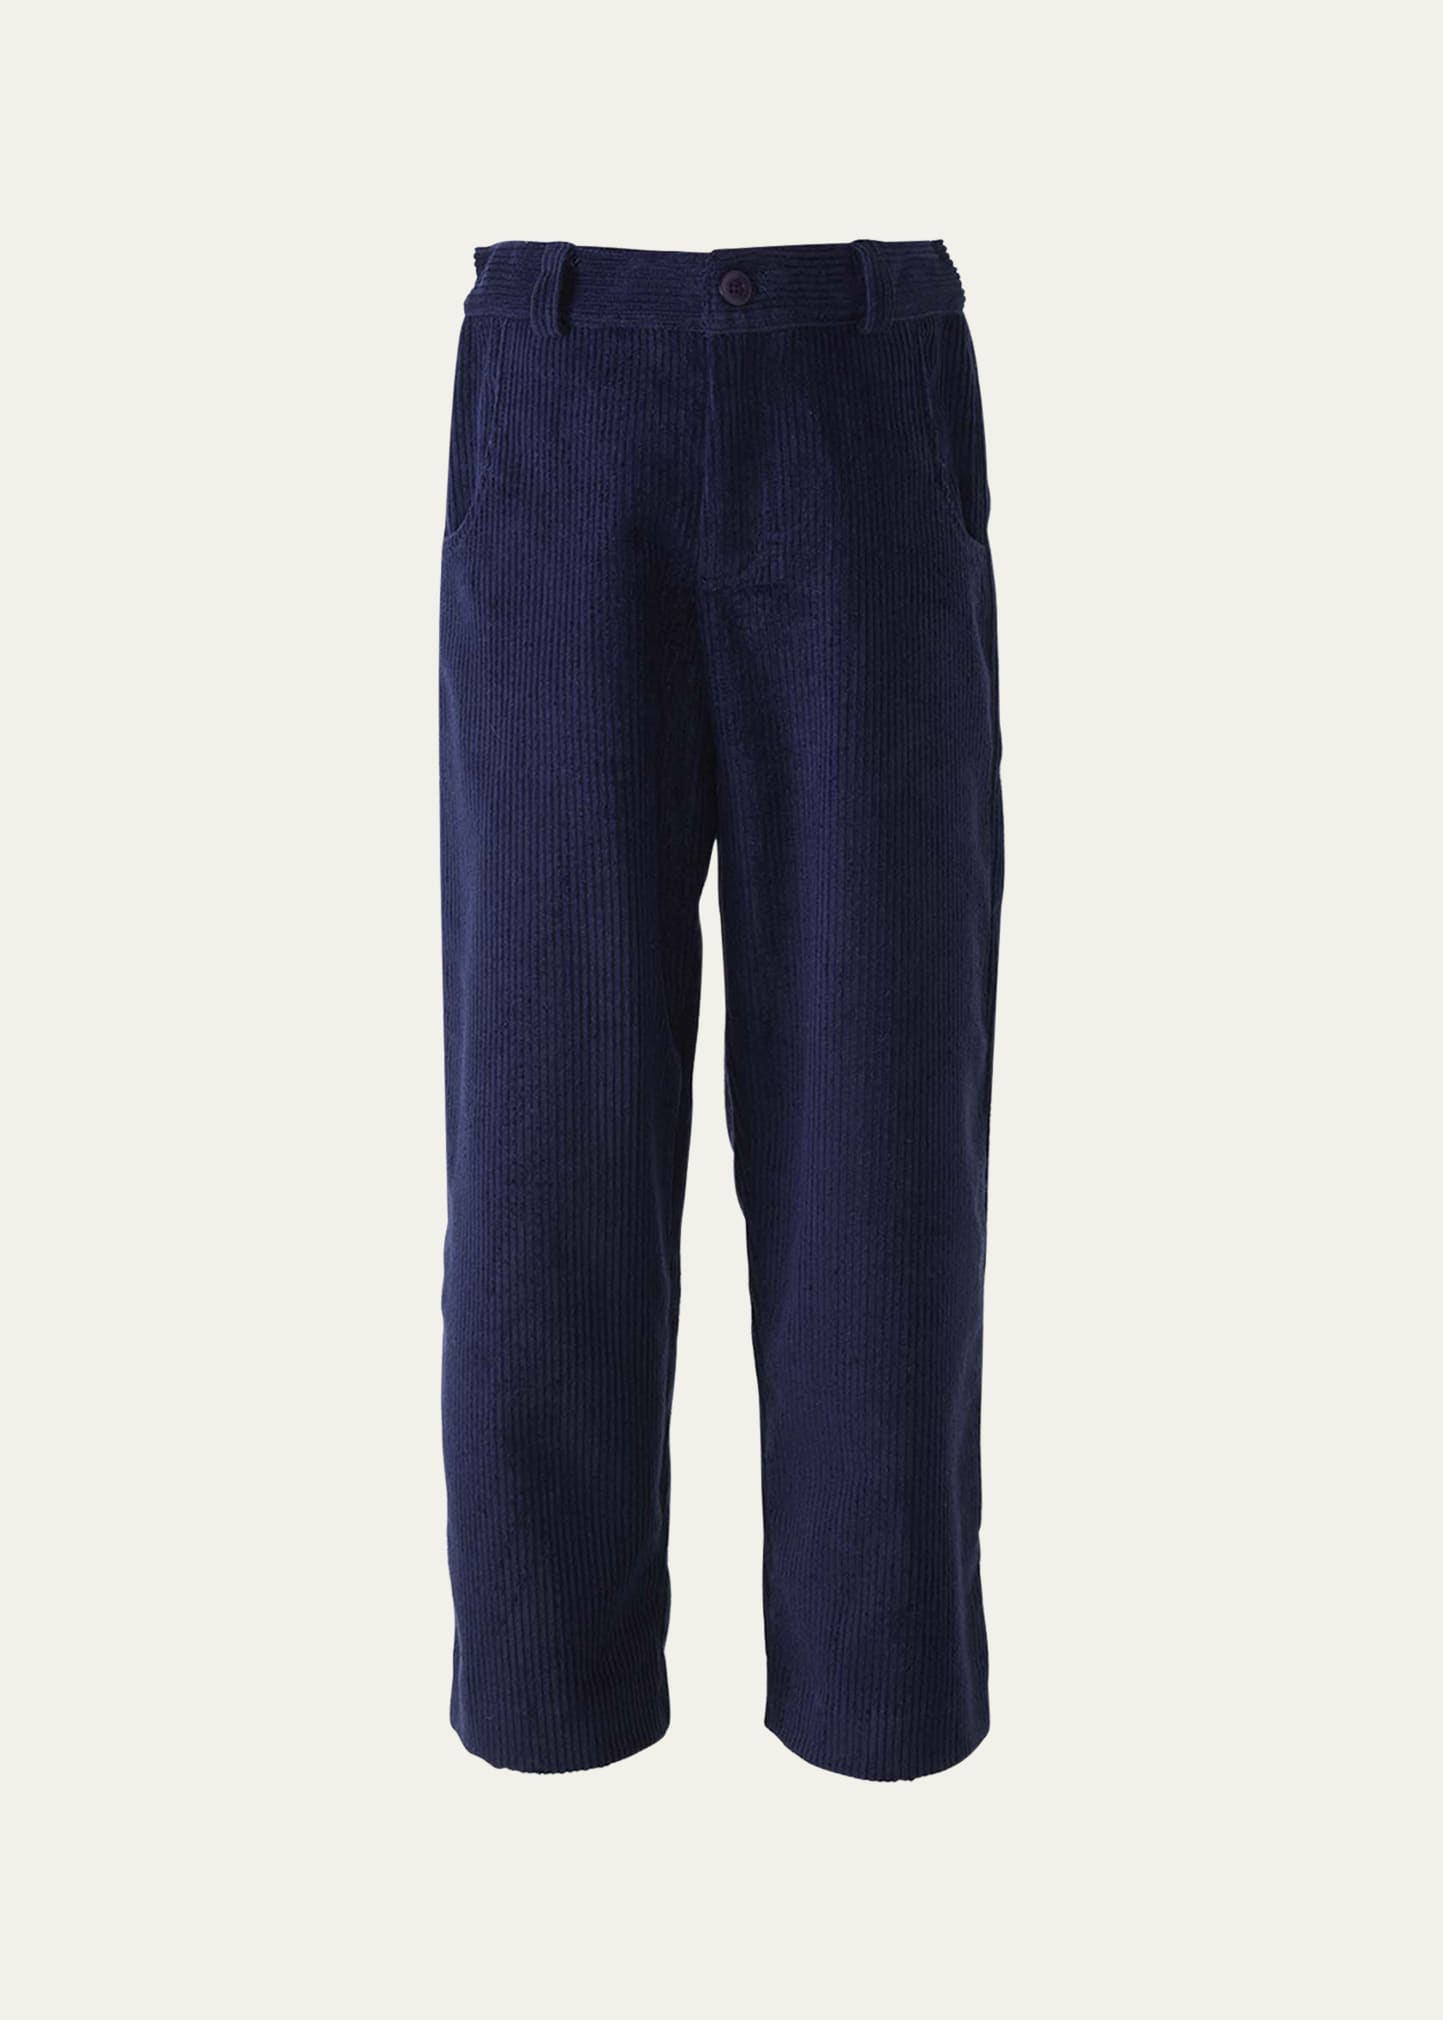 Boy's Corduroy Trousers, Size 2-10